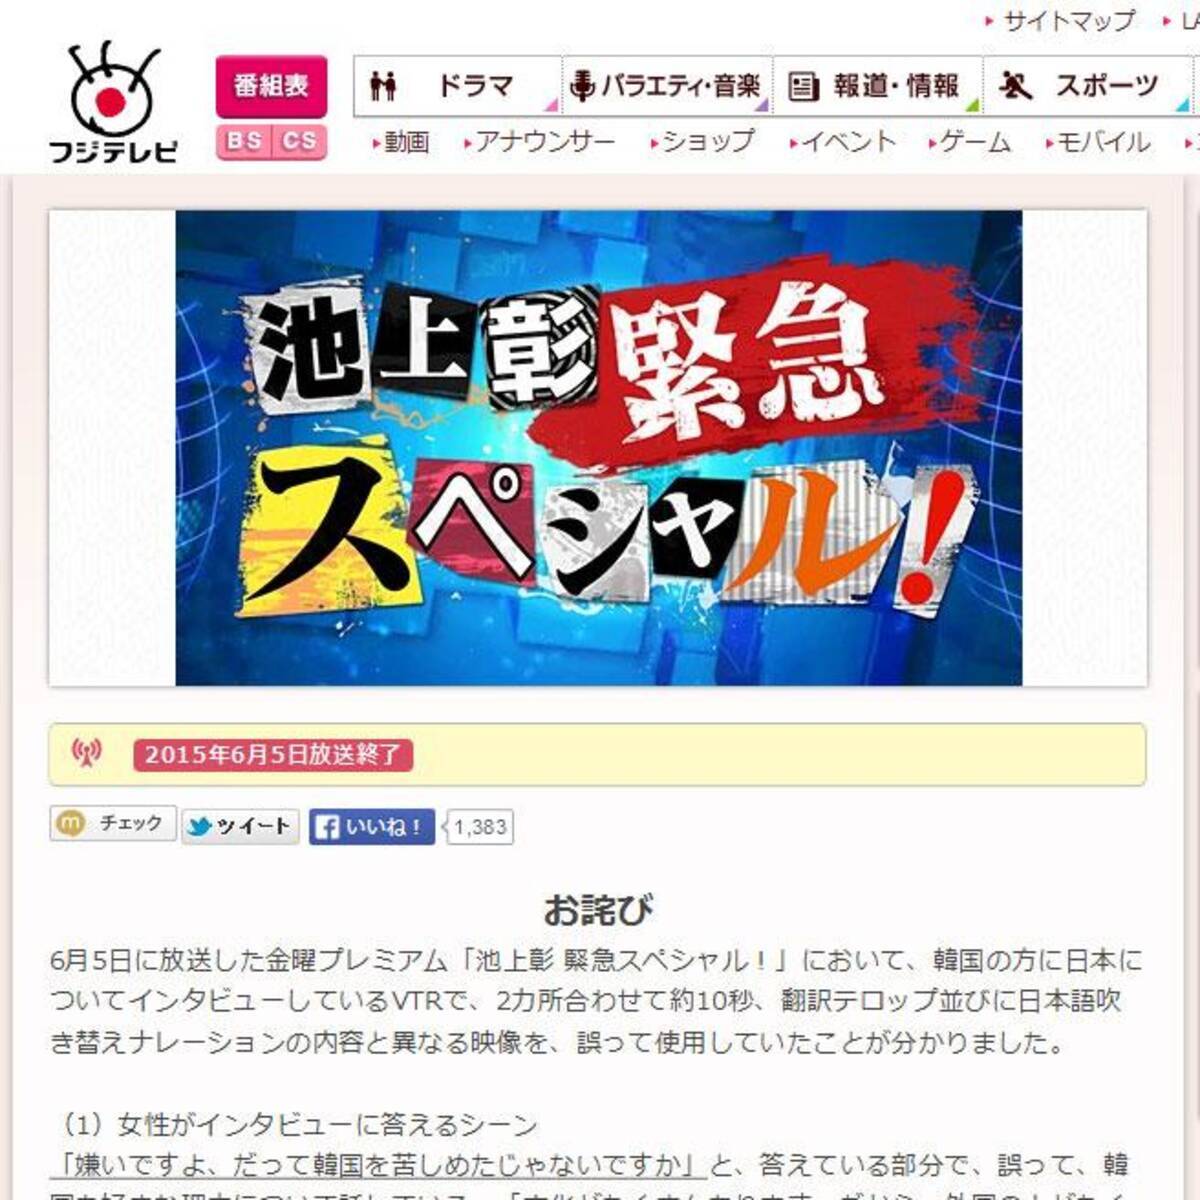 もうこれ以上捏造はやめてください 池上彰の番組で韓国人の発言に捏造テロップ ウェブで署名運動 フジはお詫びを掲載 15年6月29日 エキサイトニュース